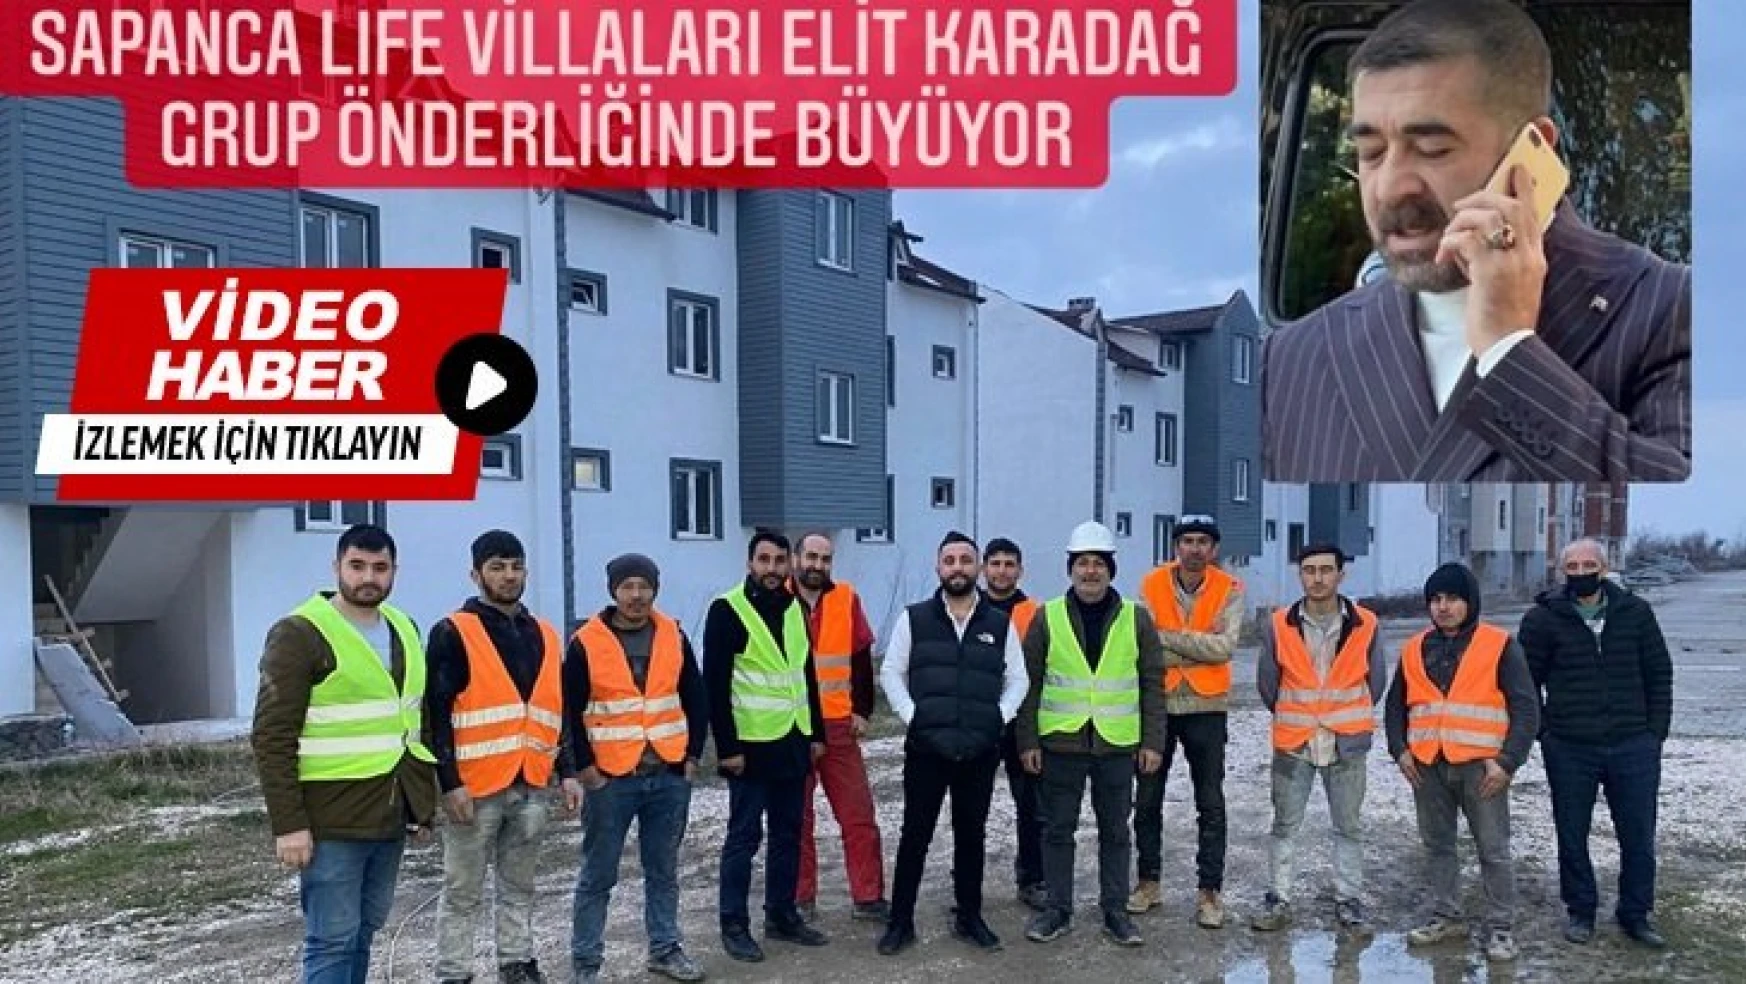 Sapanca Lıfe Villaları Elit Karadağ Grup Önderliğinde Büyüyor